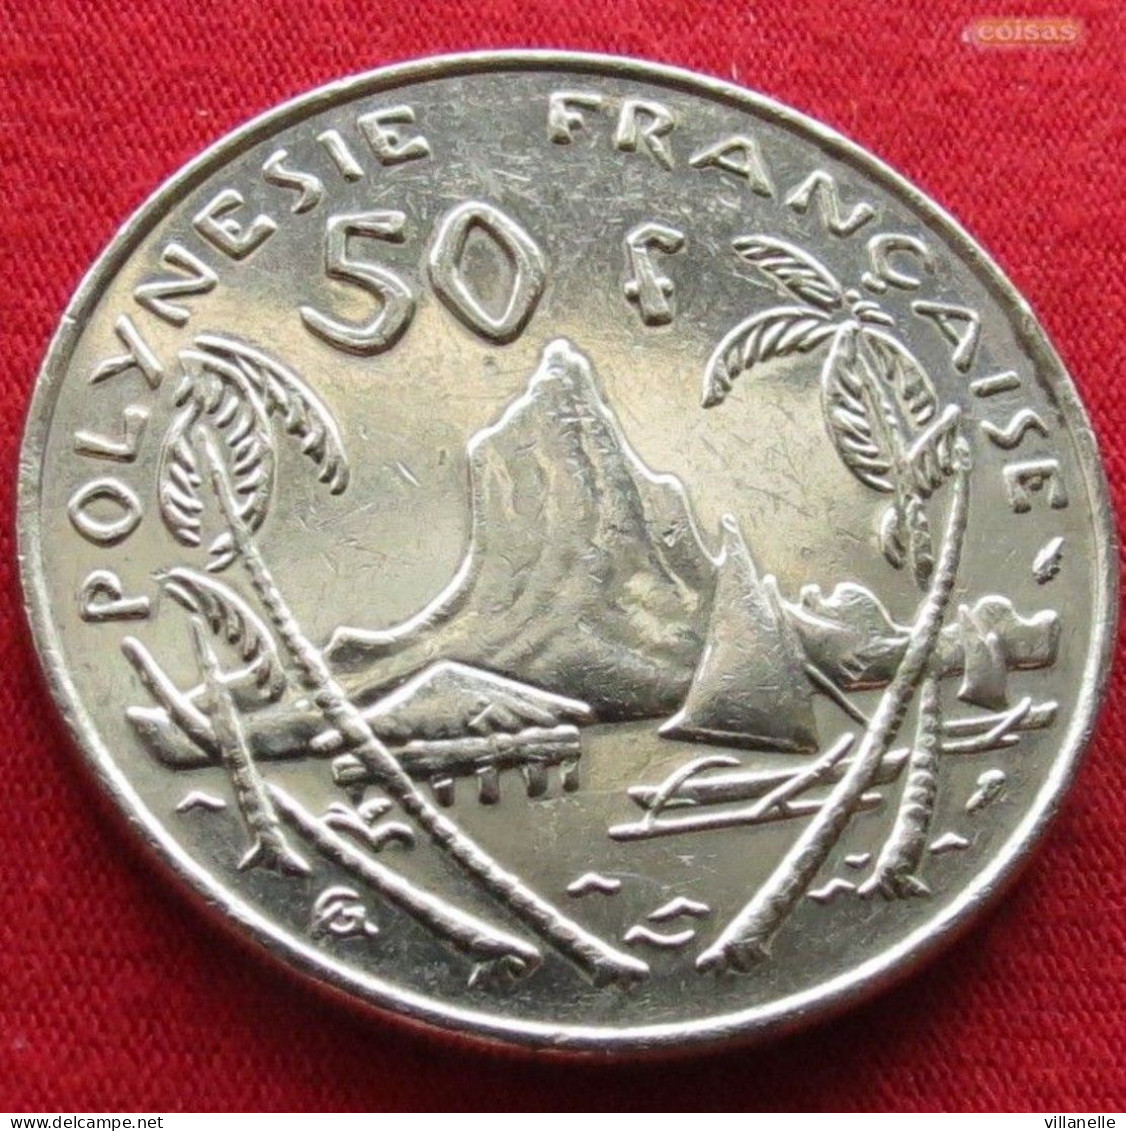 French Polynesia 50 Francs 1988 KM# 13 *V1T Polynesie Polinesia - Polinesia Francese